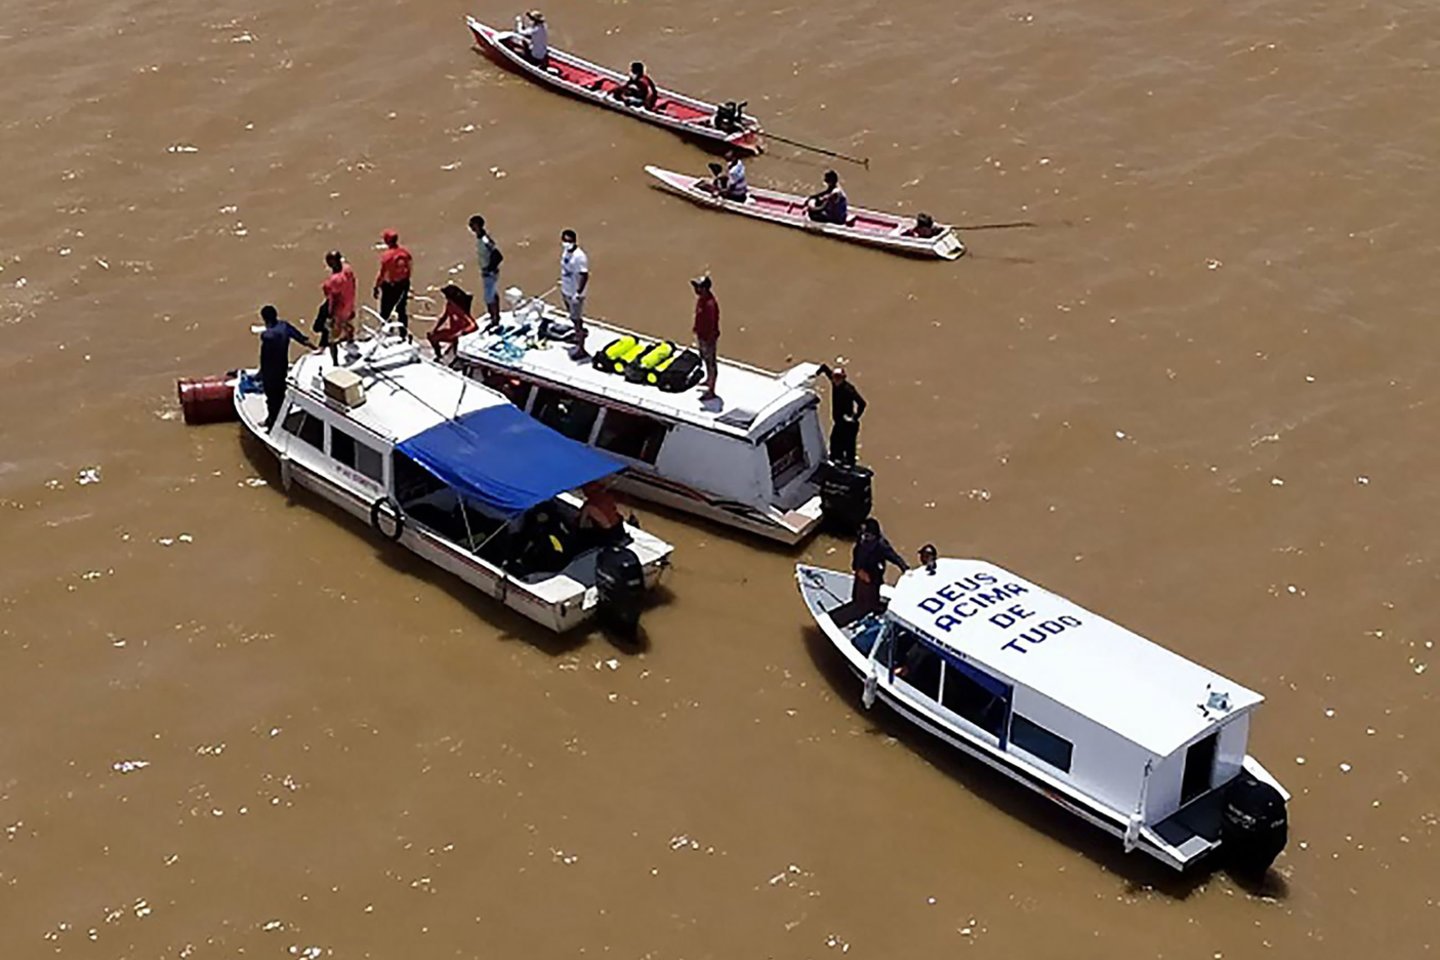  ​Amazonijos atogrąžų miškų regione nuskendus upių keleiviniam laivui žuvo mažiausiai 18 žmonių, pirmadienį pranešė Brazilijos tarnybos, gyviems išlikusiems žmonėms papasakojus, kaip jiems teko siaubo apimtiems gelbėtis iš nugrimzdusio į dugną laivo.<br>AFP/Scanpix nuotr.